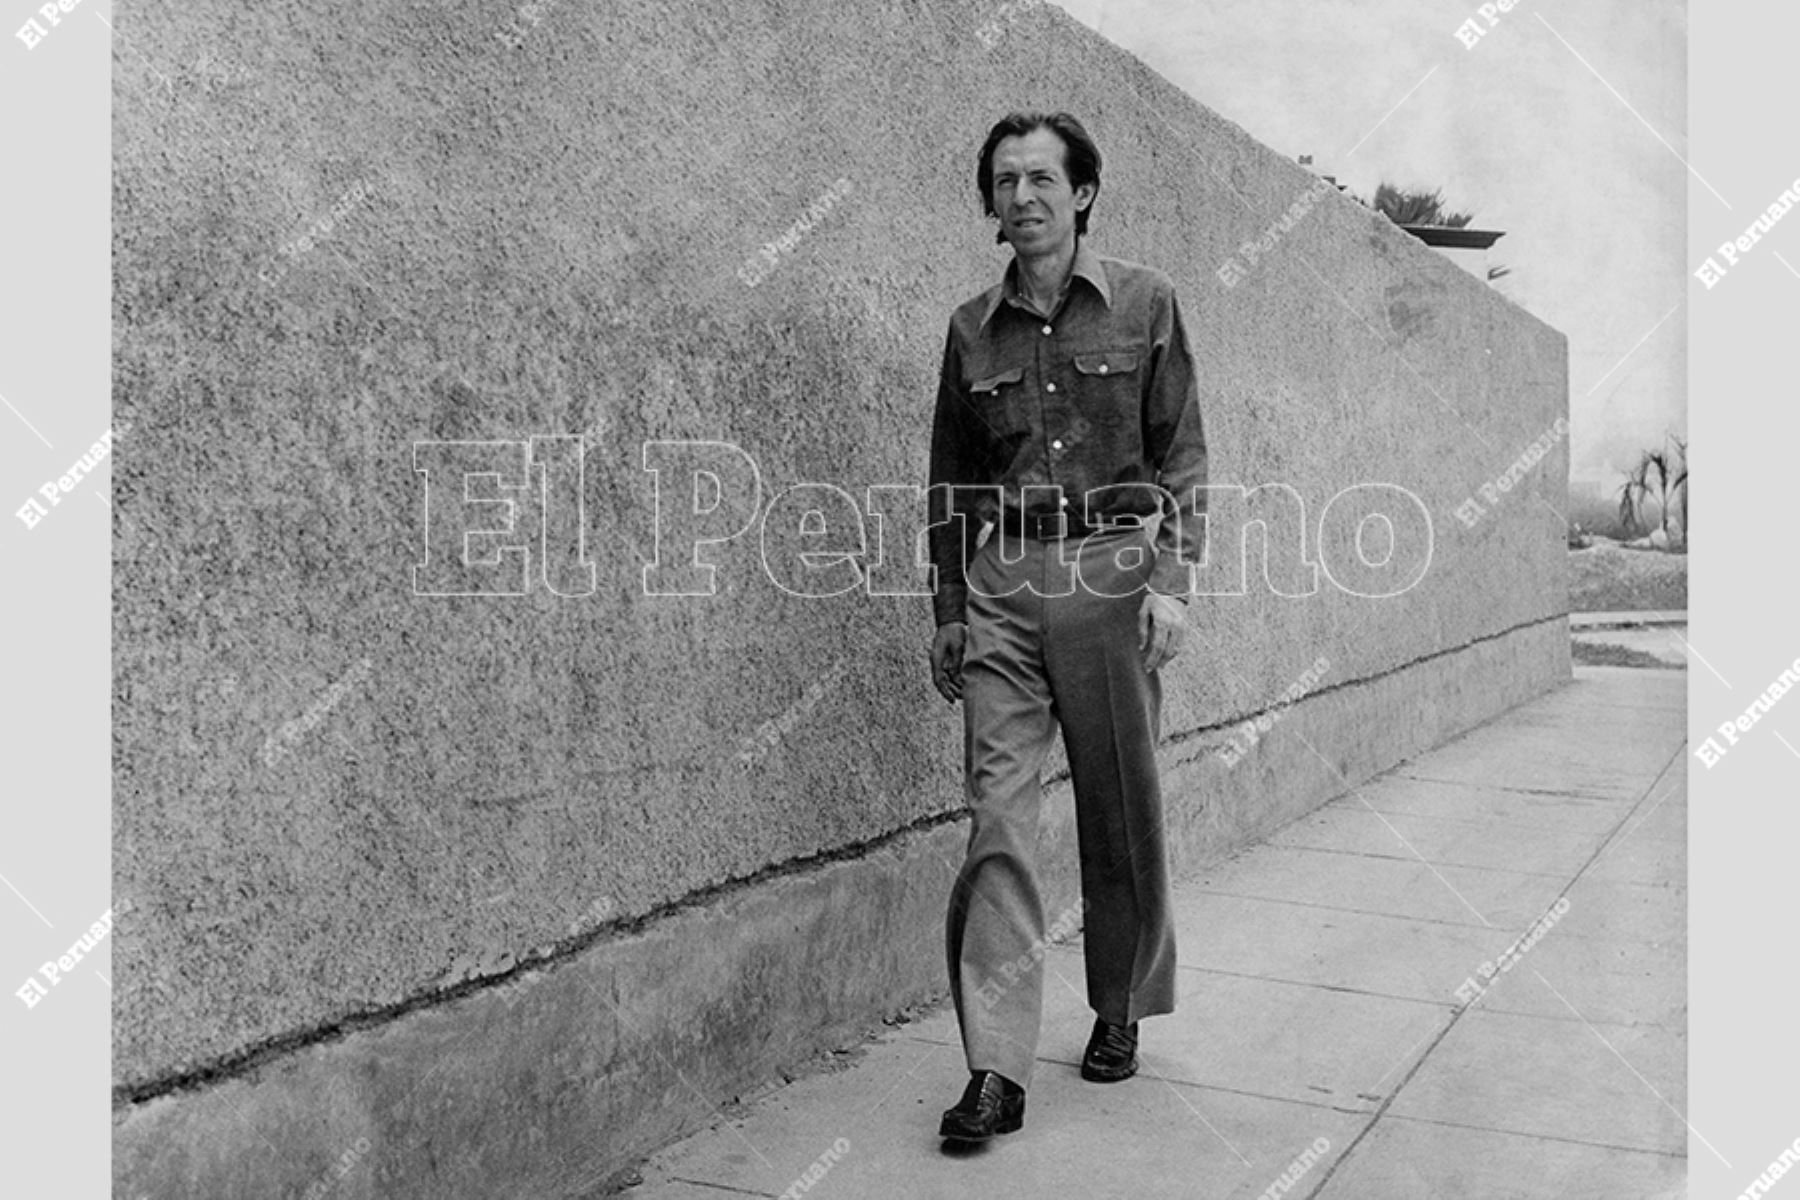 Lima - 1 marzo 1975 / Julio Ramón Ribeyro, autor de La palabra del mudo. 
Foto: Archivo Histórico de El Peruano / Norman Córdova